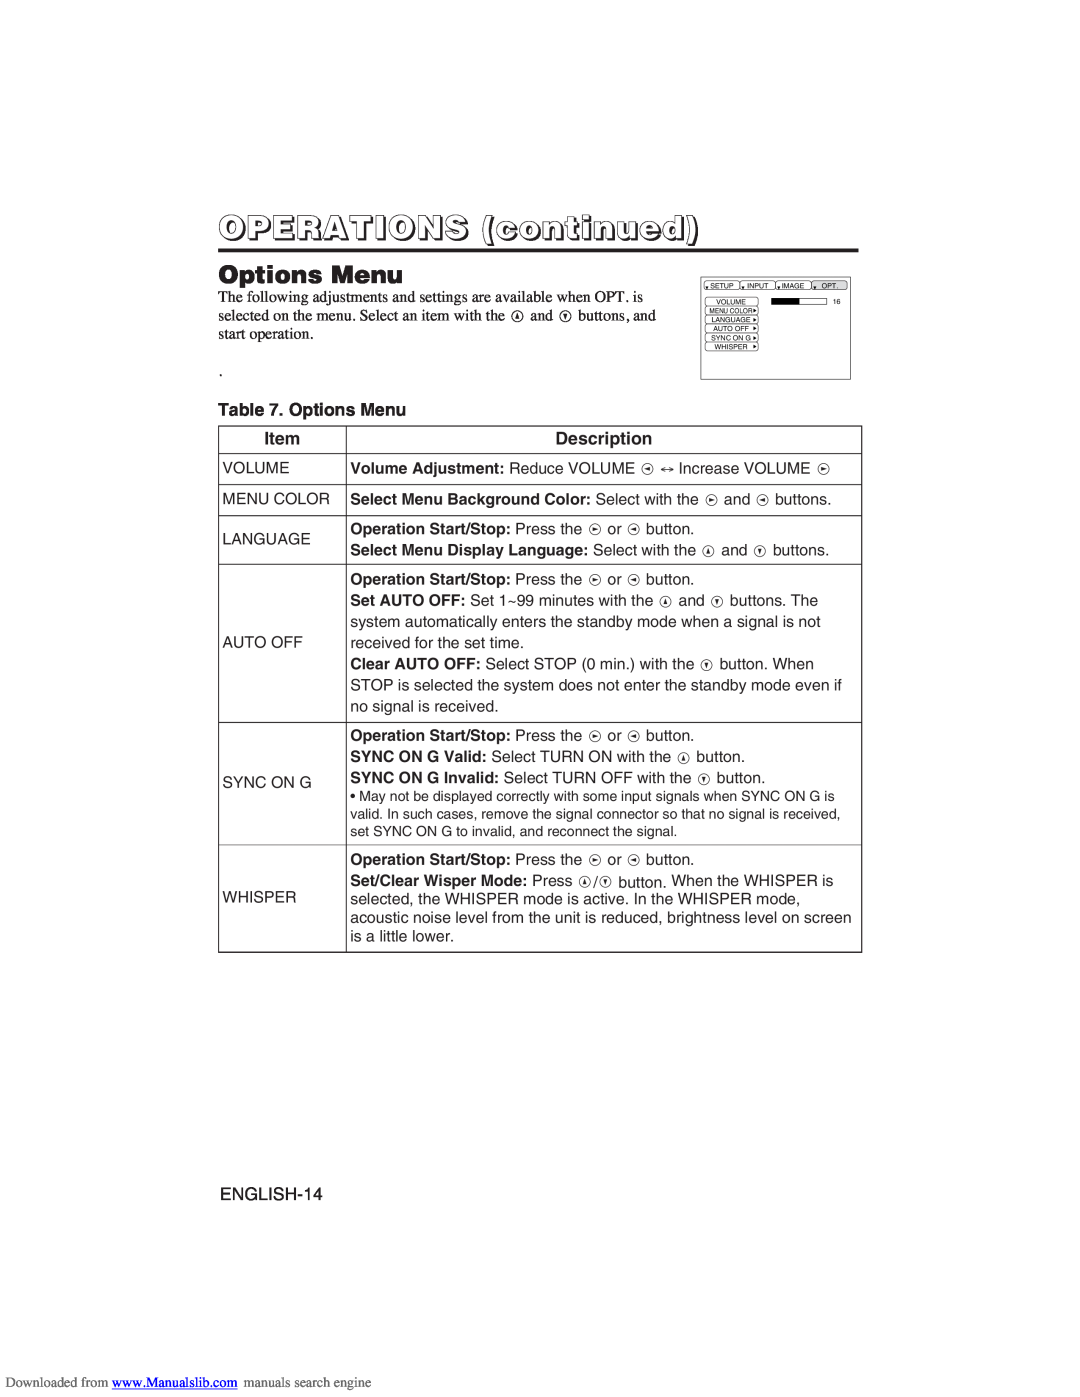 Hitachi CP-X275W user manual Options Menu, OPERATIONS continued, Item, Description 